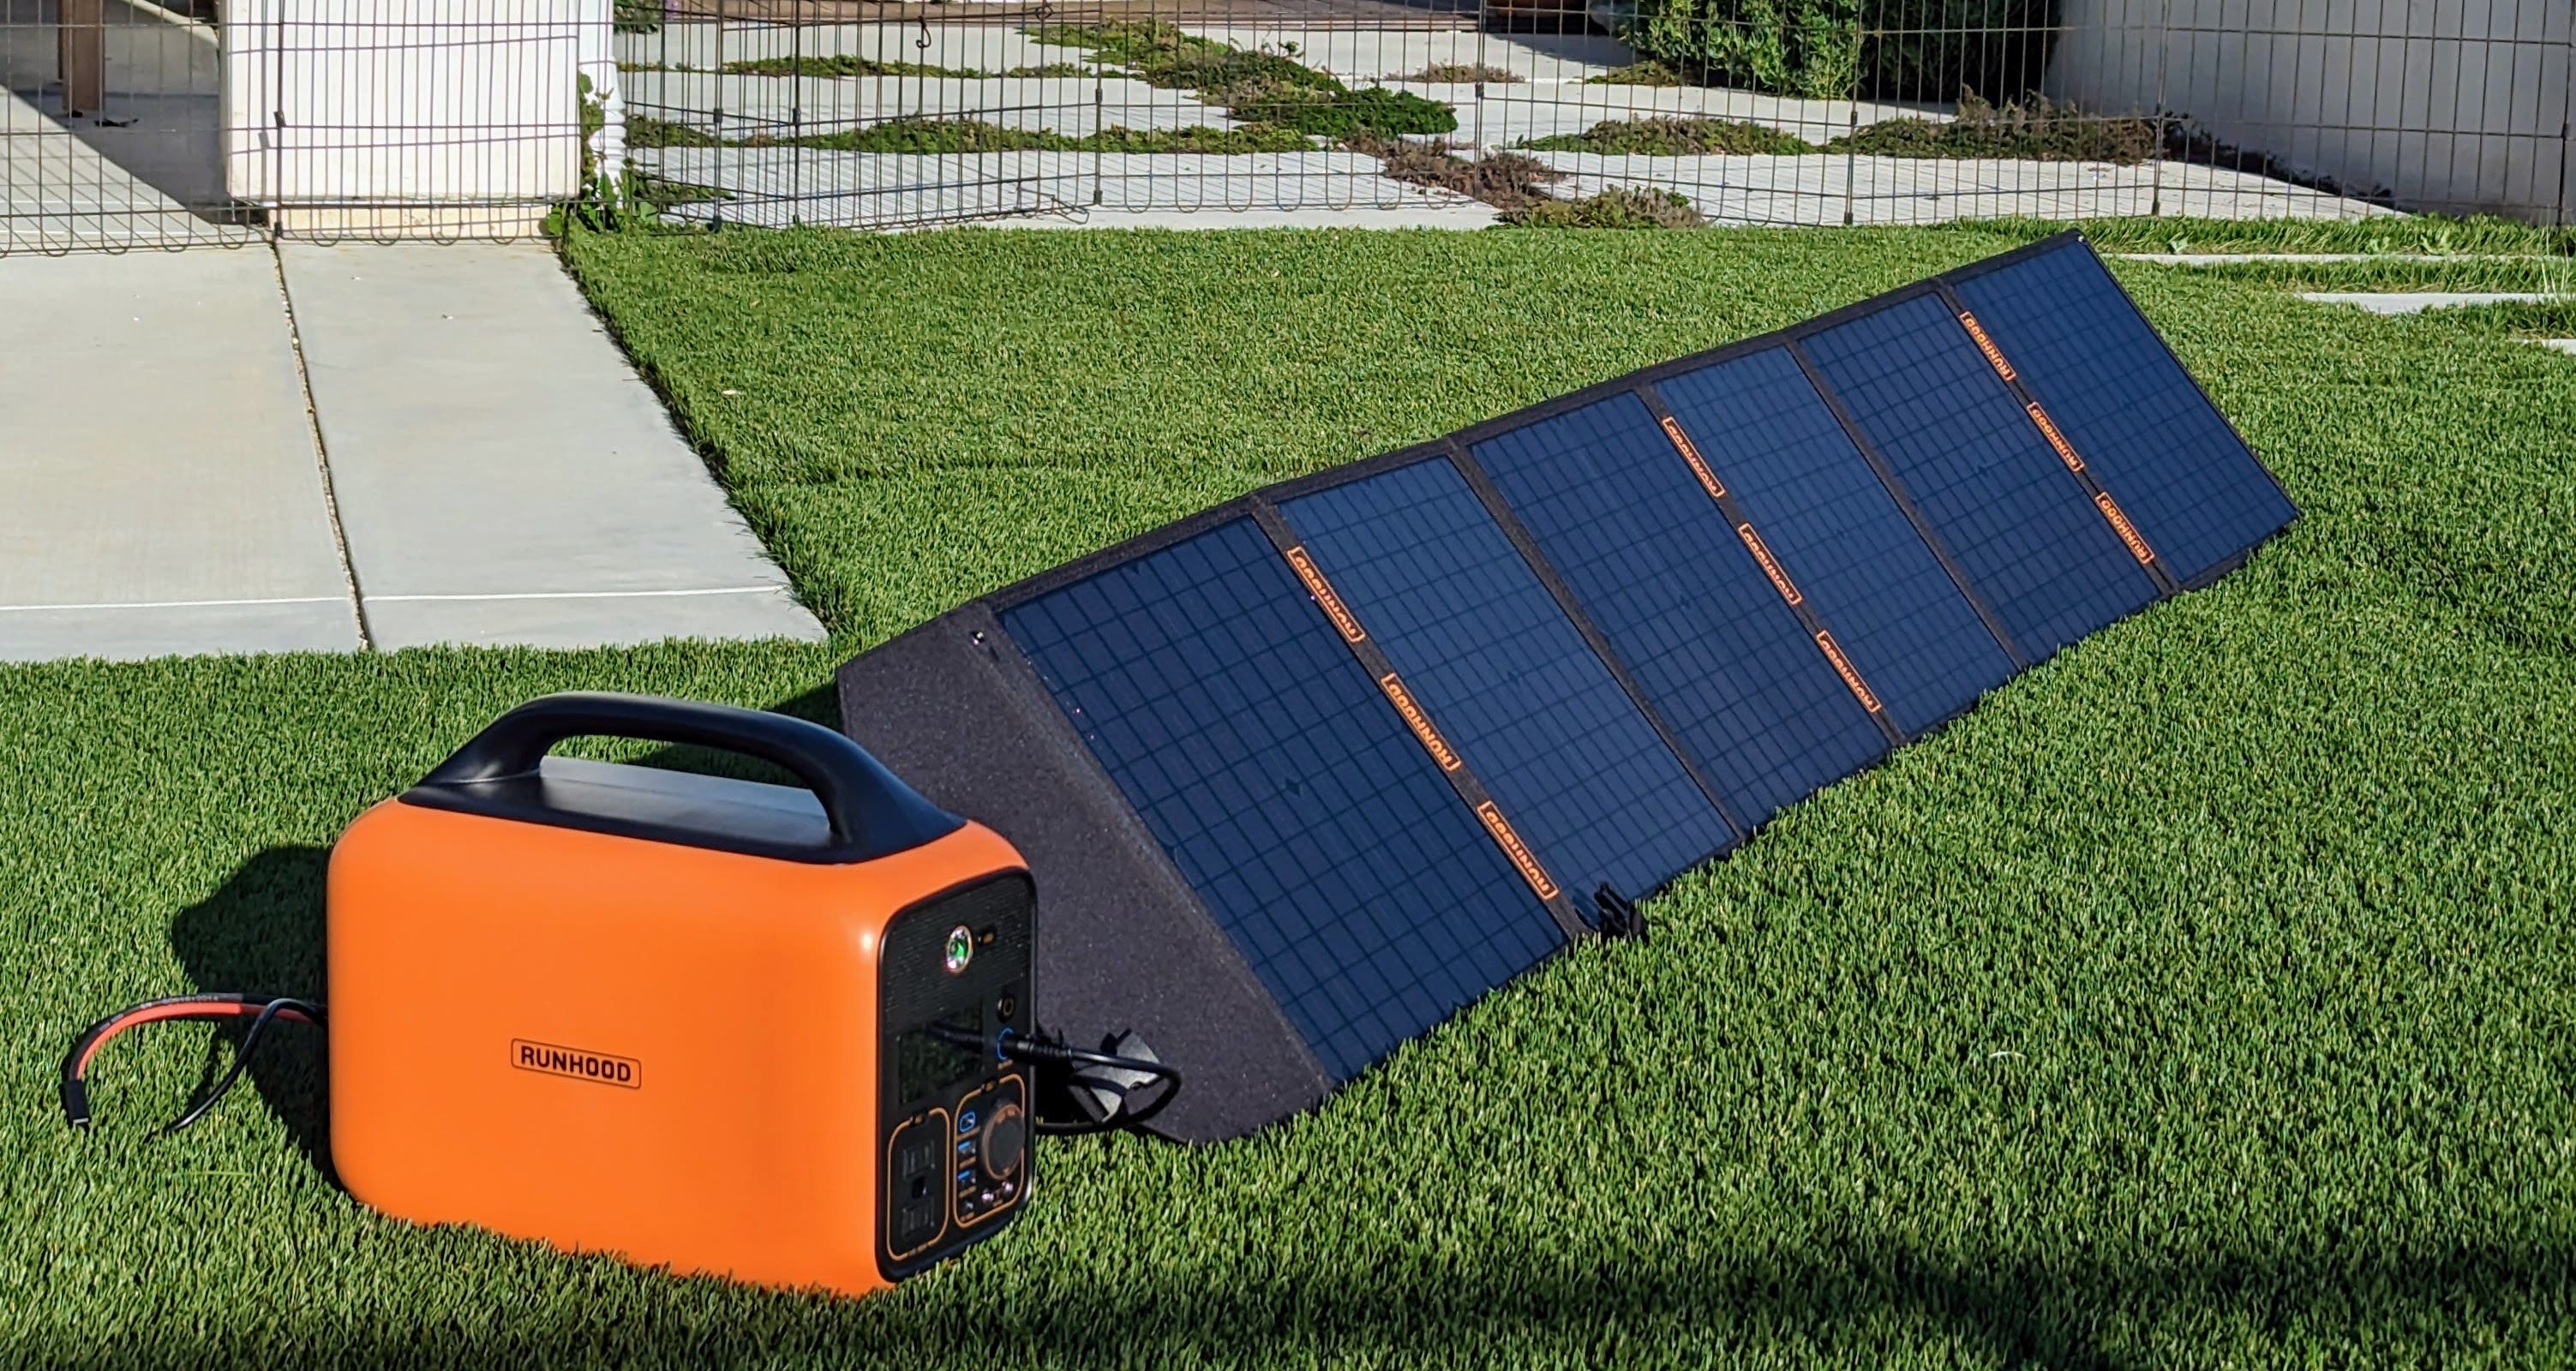 Runhood RALLYE 600 Plus Solargenerator